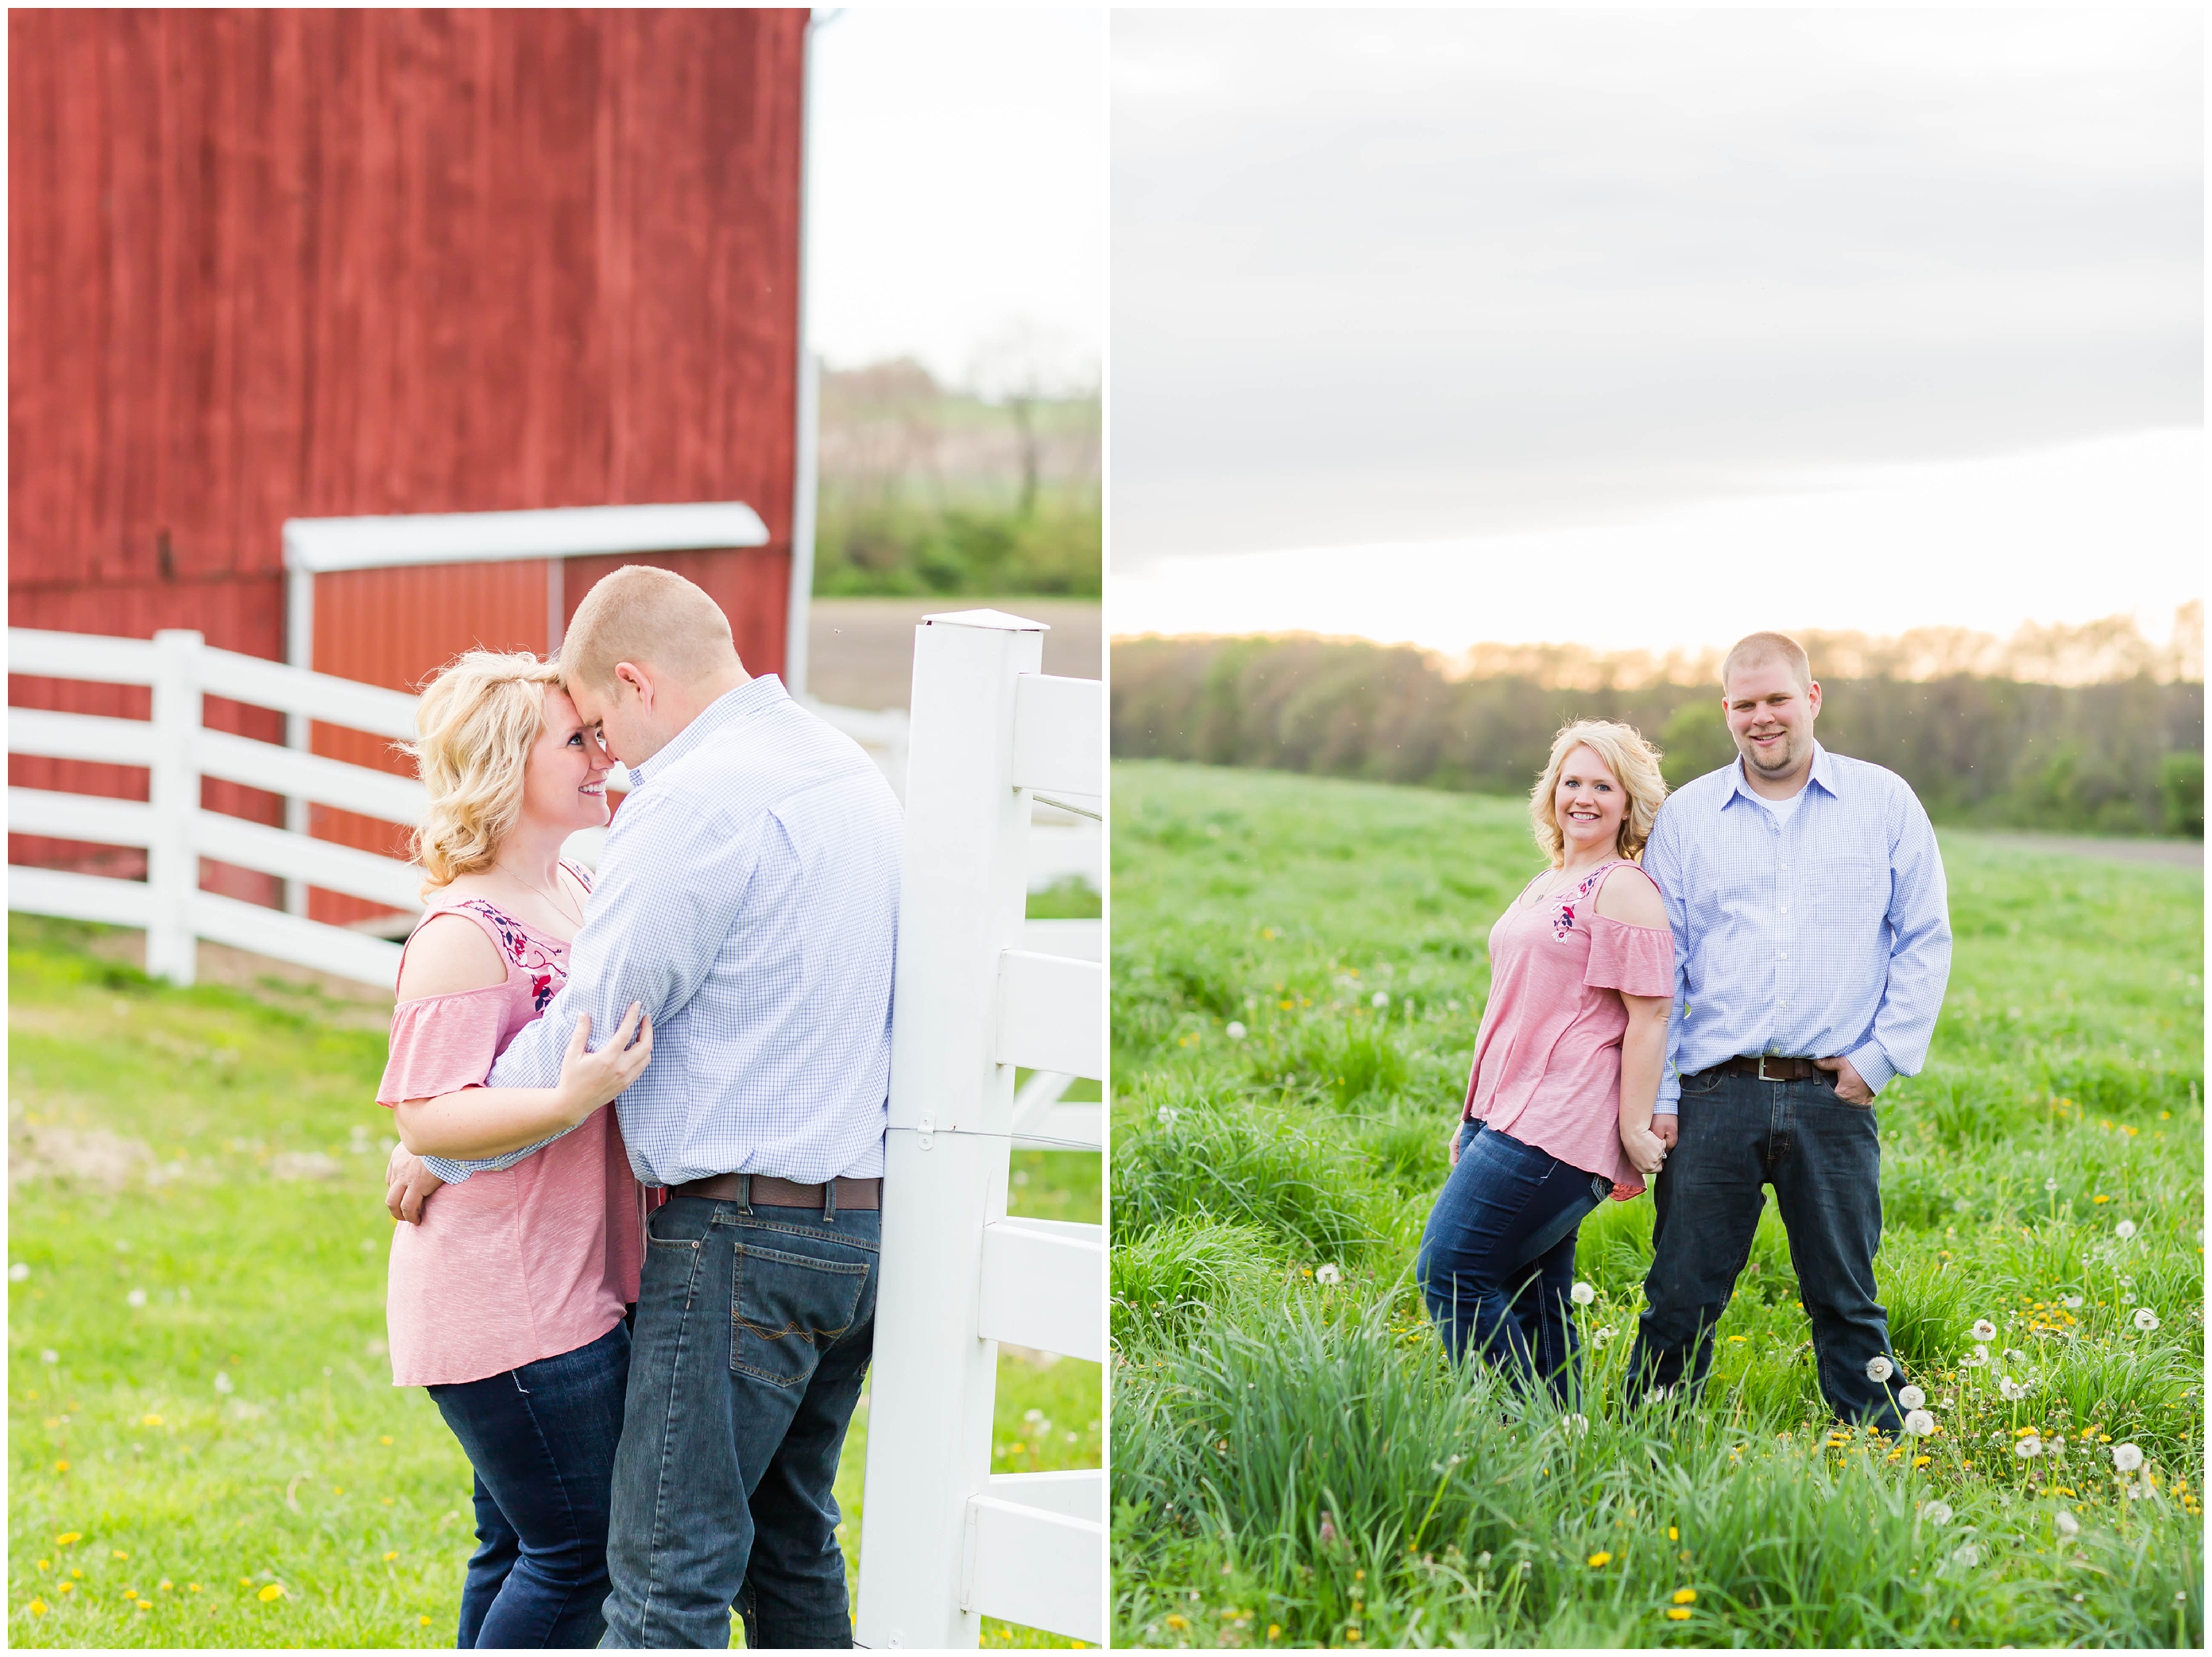 Cleveland Ohio Wedding Photographer,farm engagement photos,loren jackson photography,photographer akron ohio,